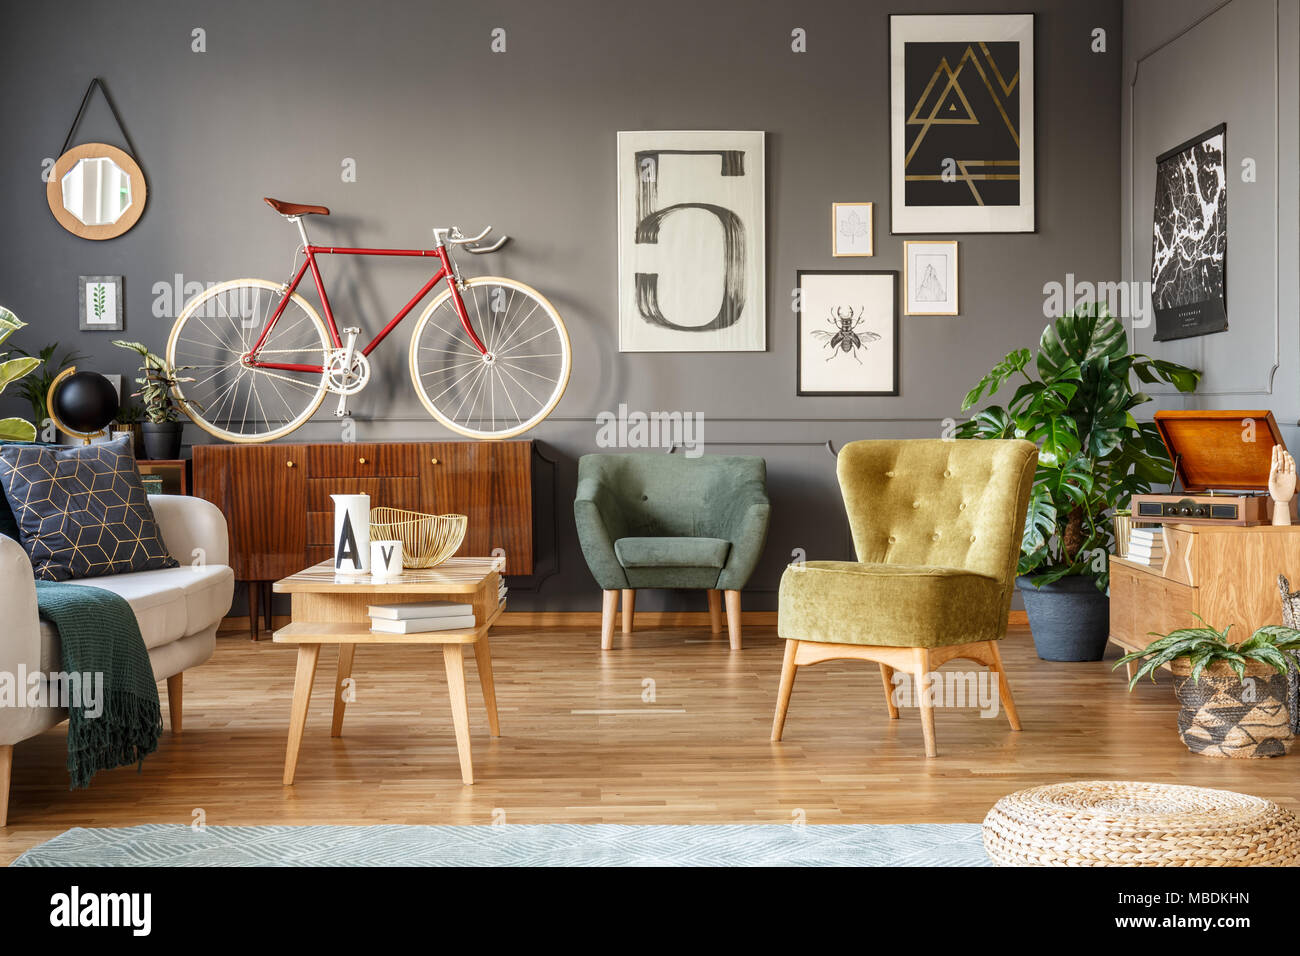 Vélo rouge sur une armoire en bois, fauteuils verts et affiches sur le mur gris dans un salon intérieur Banque D'Images